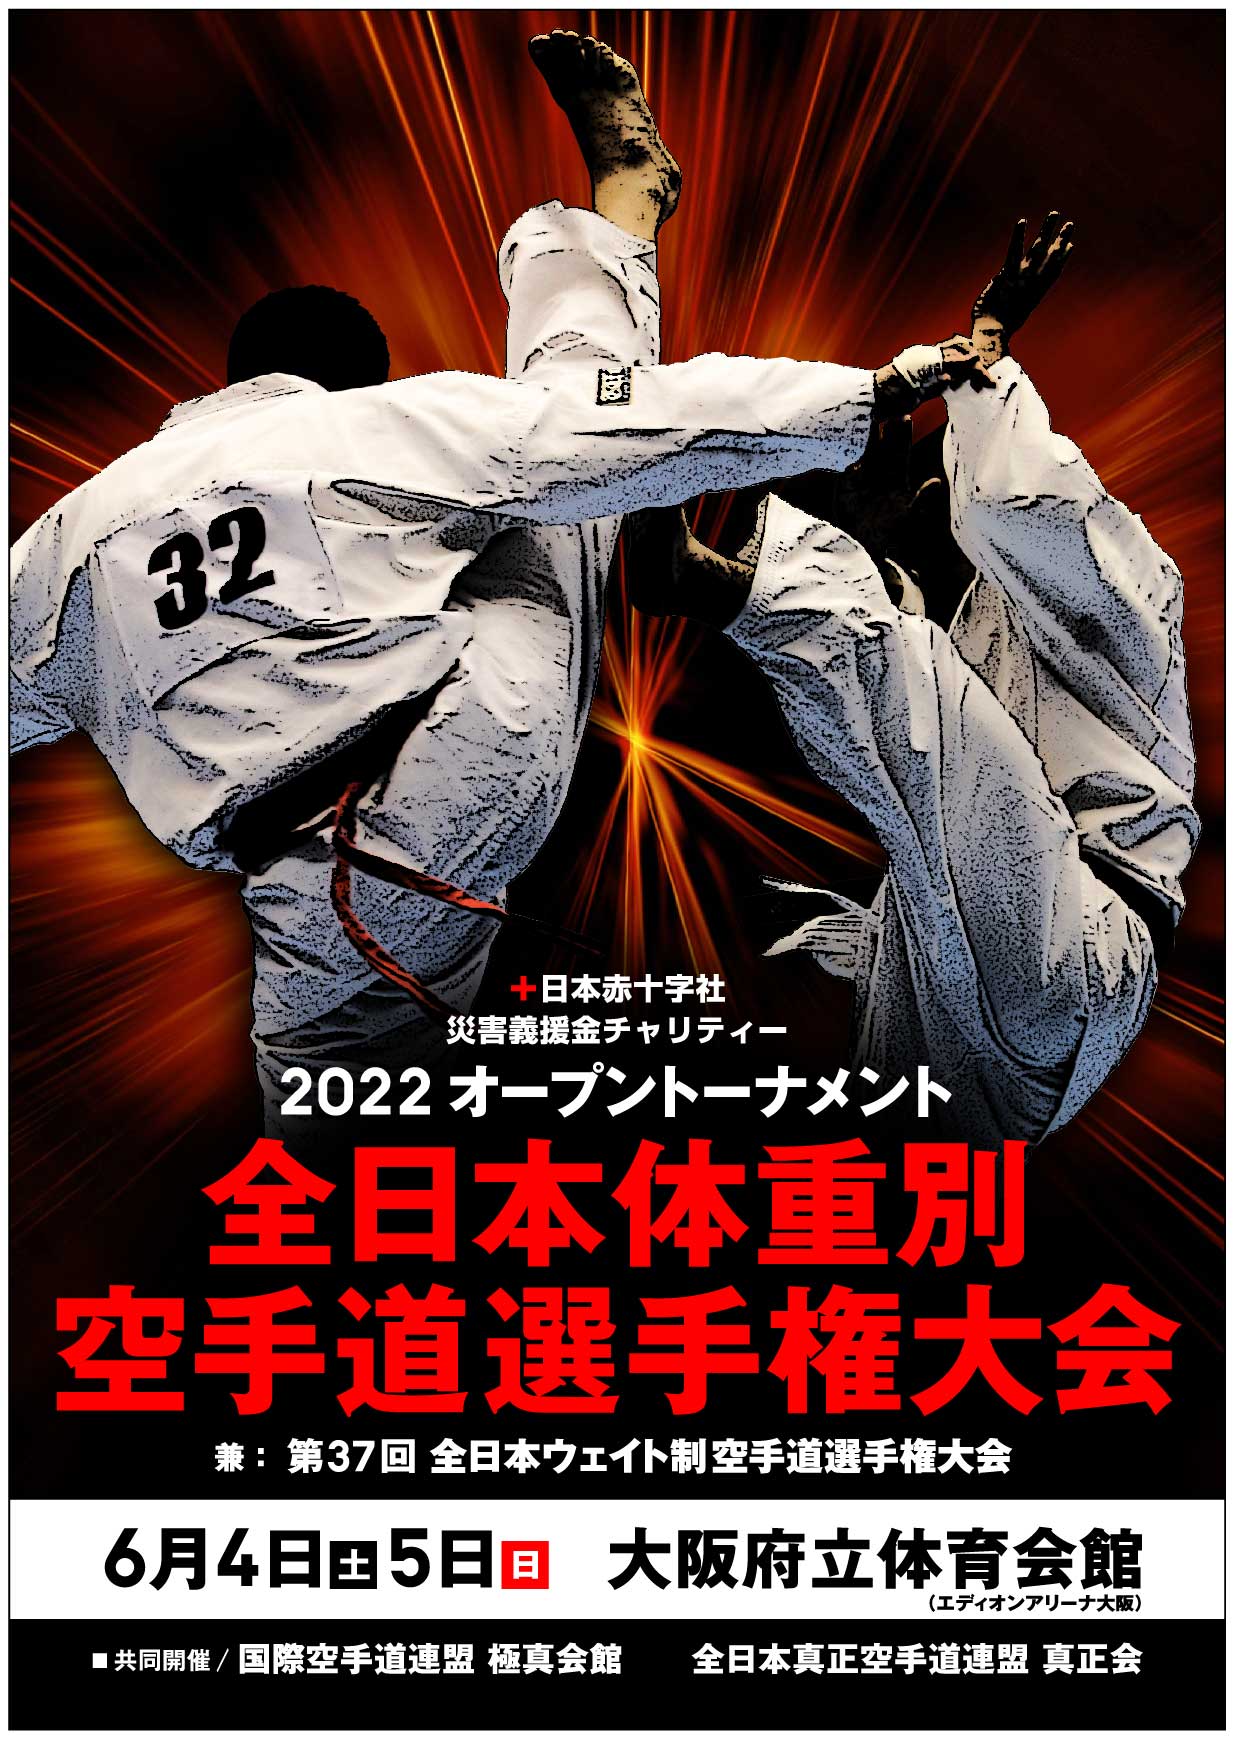 2022オープントーナメント全日本体重別空手道選手権大会 開催情報